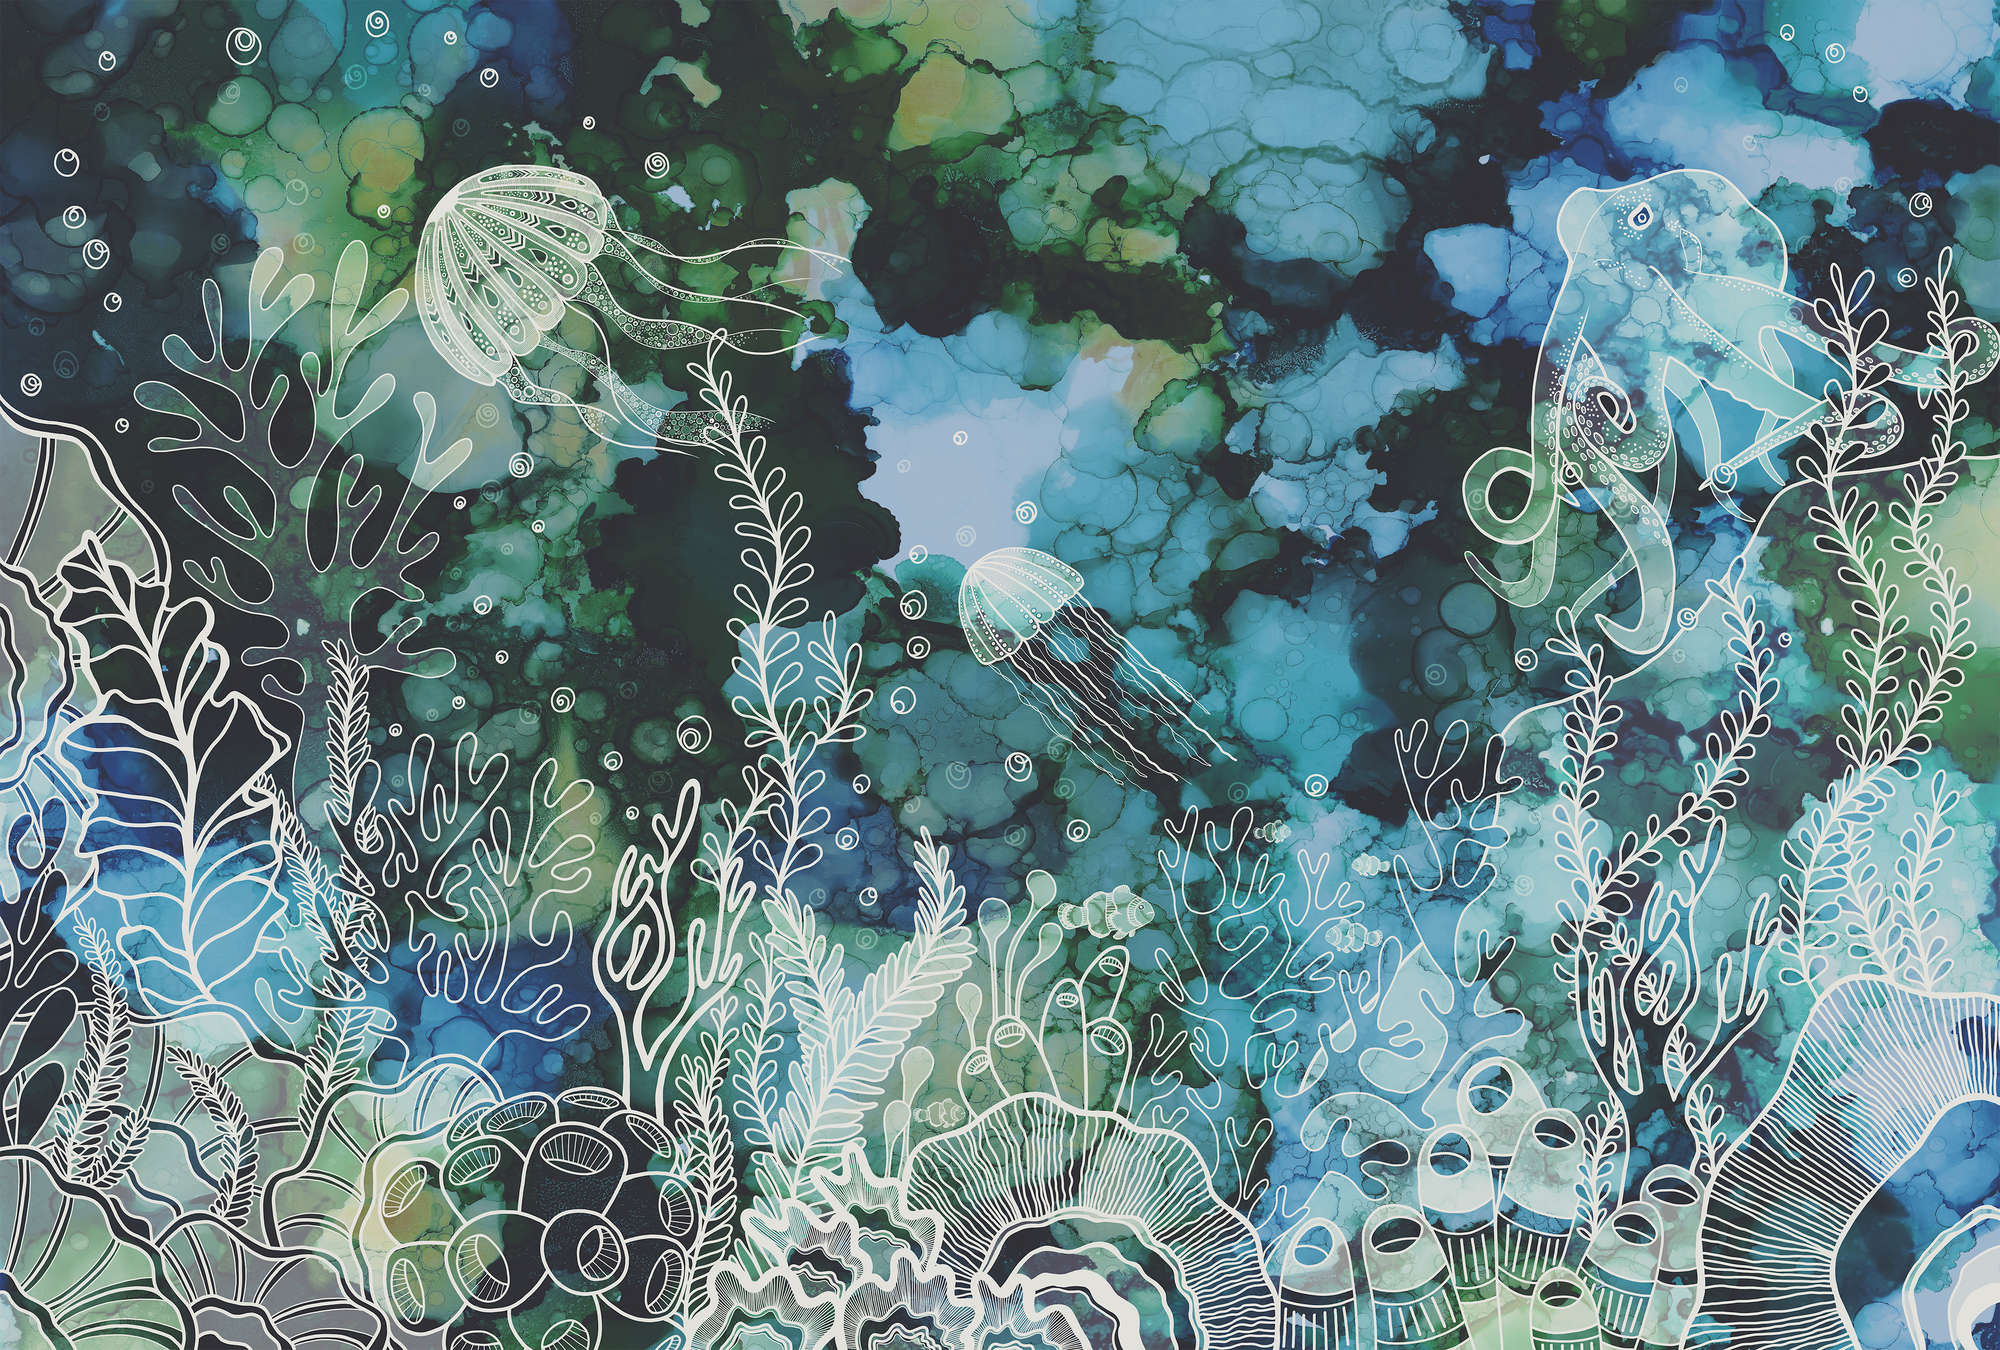             Fototapete mit Unterwasser Korallenriff in Acryl Farben
        